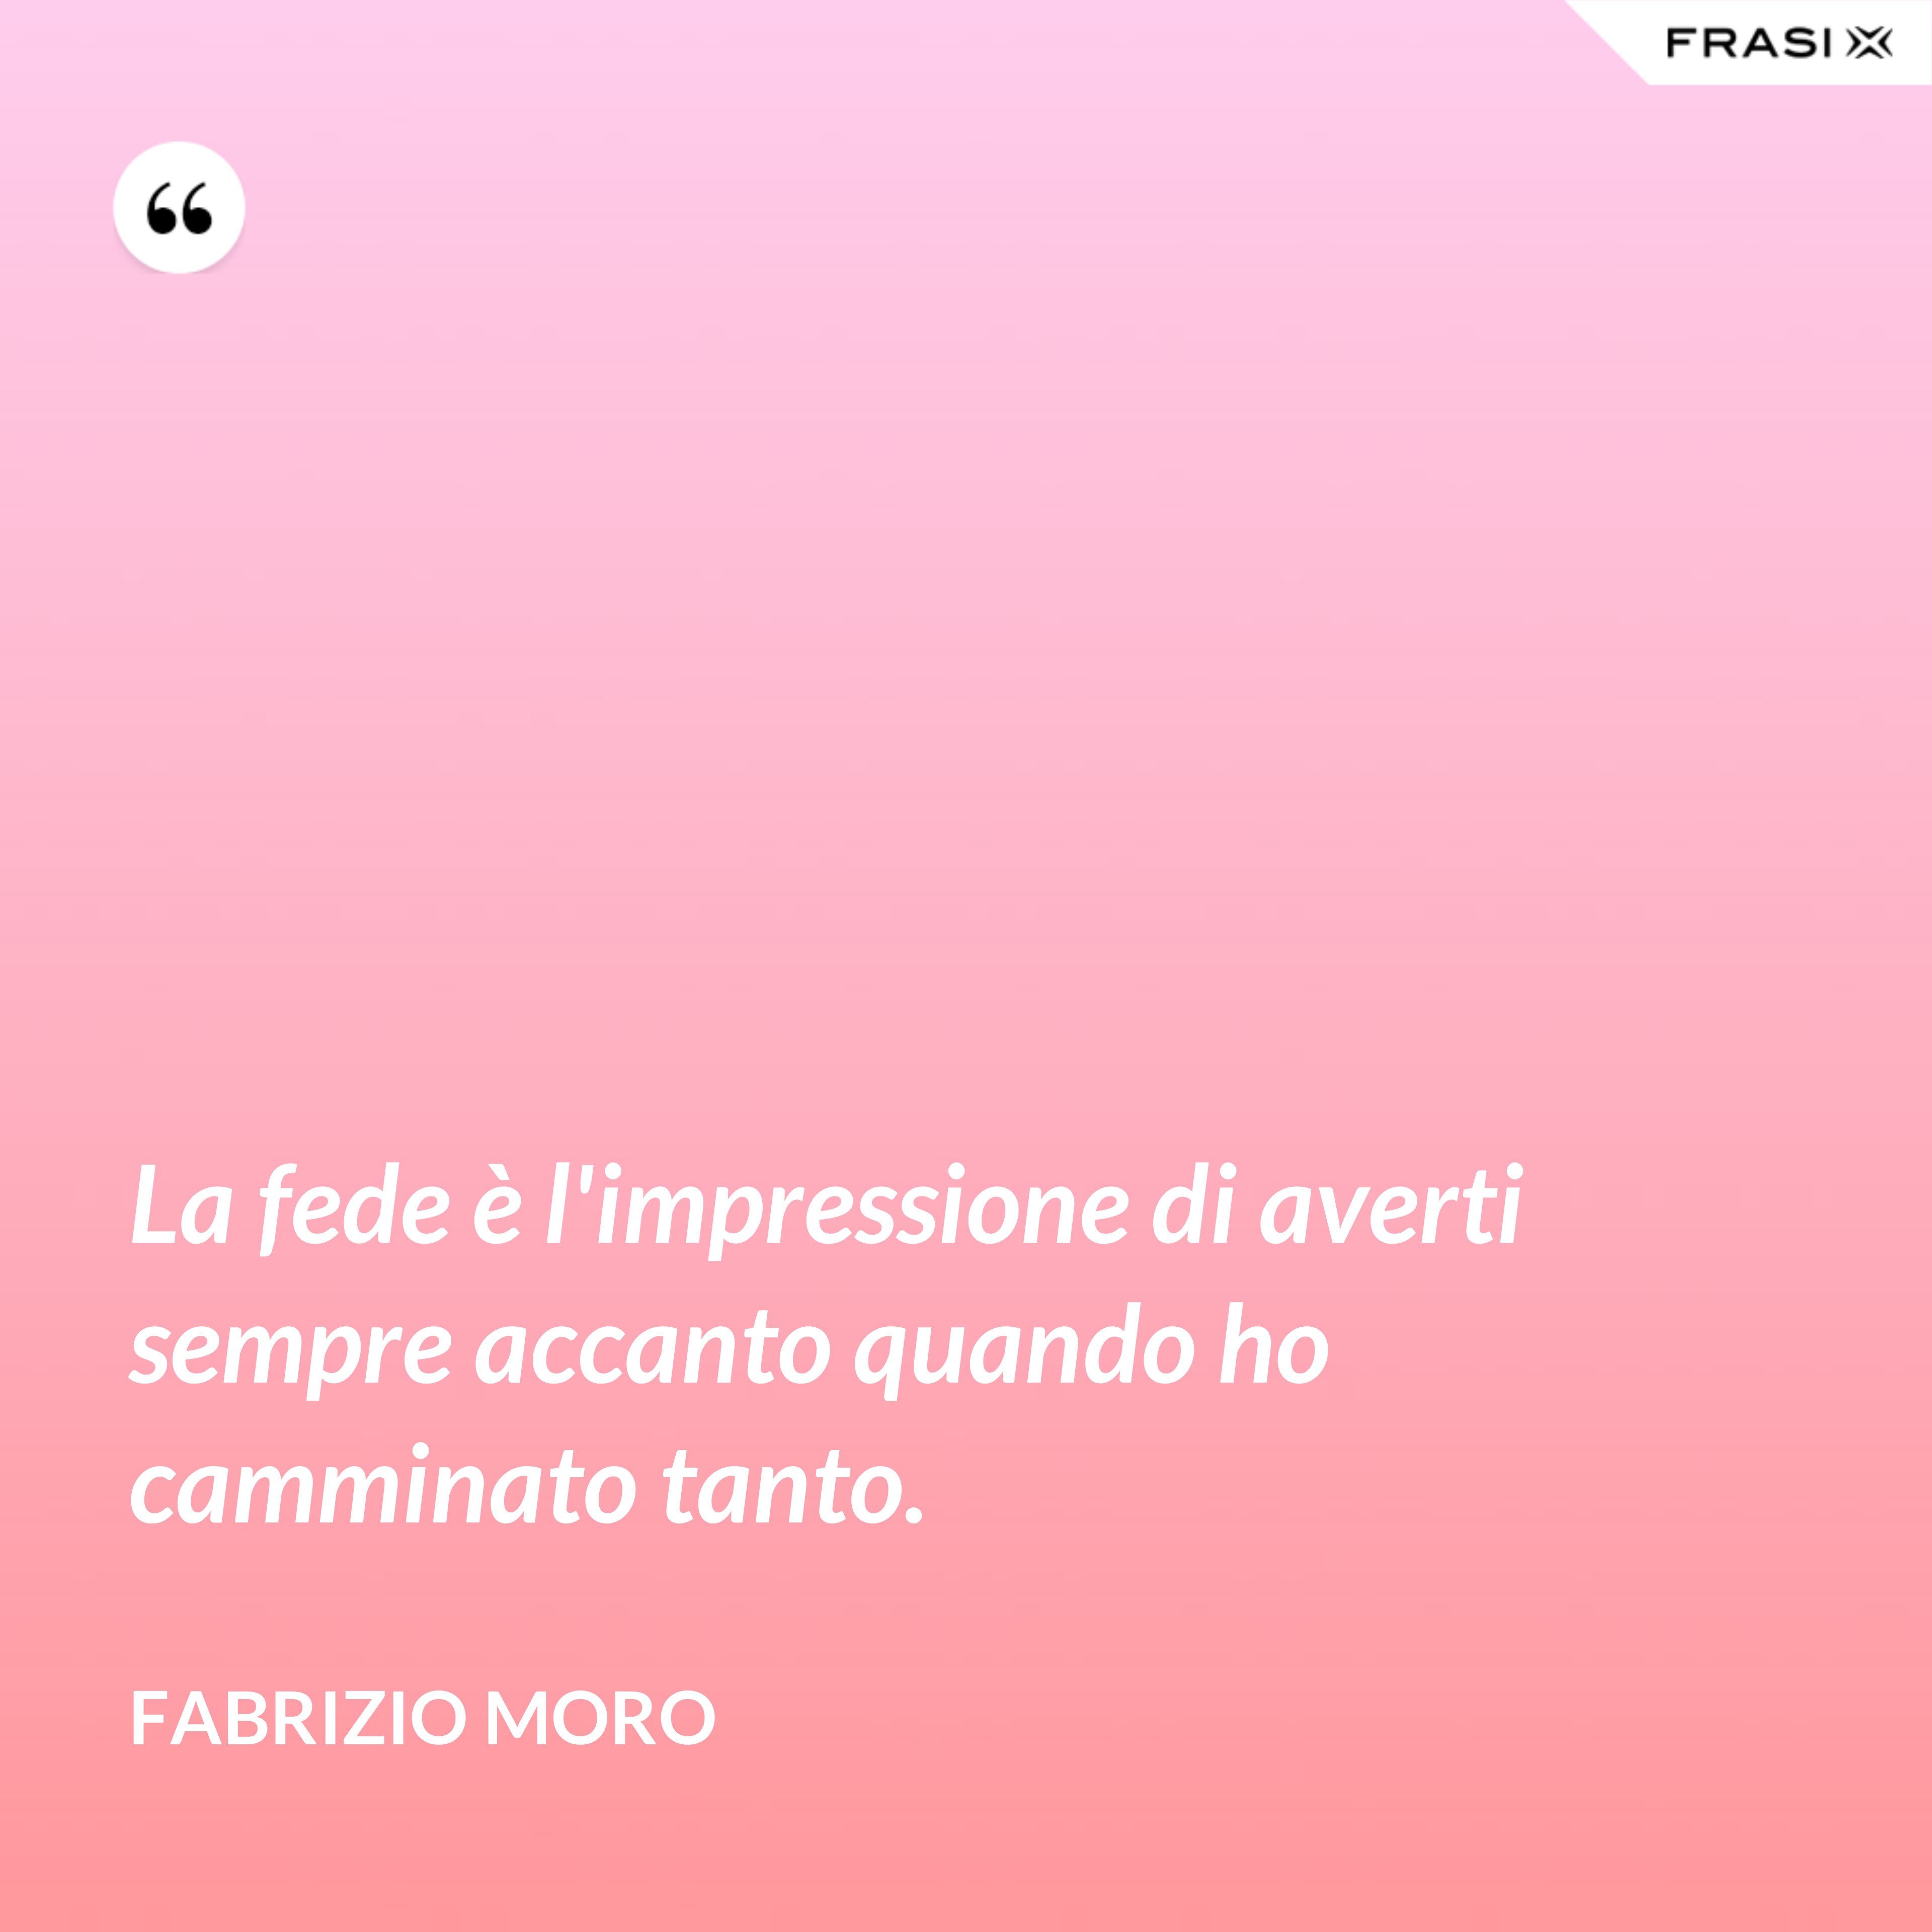 La fede è l'impressione di averti sempre accanto quando ho camminato tanto. - Fabrizio Moro